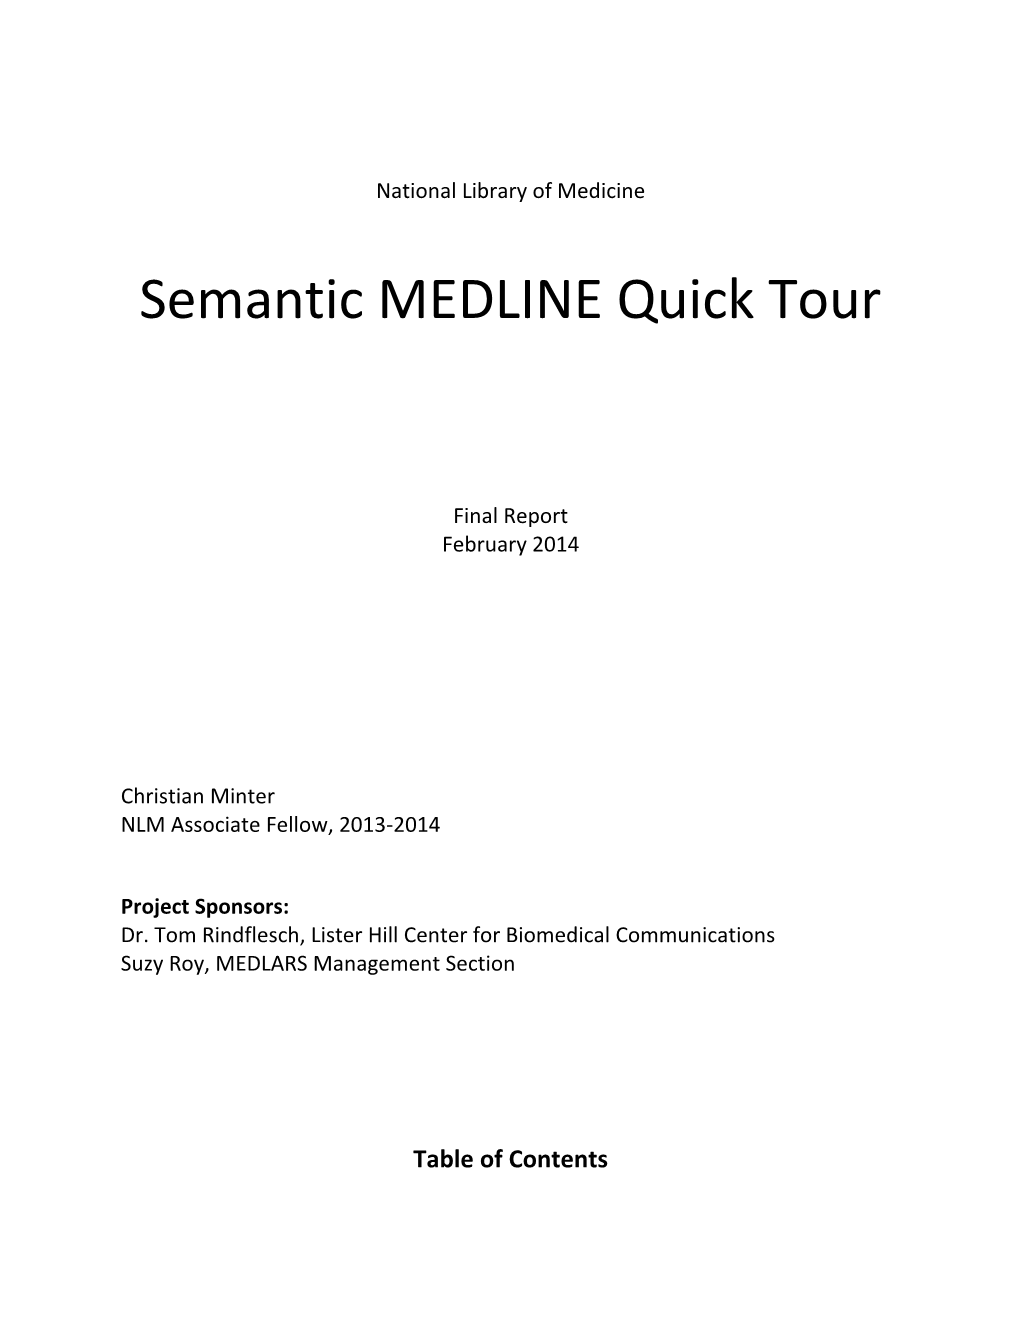 Semantic MEDLINE Quick Tour